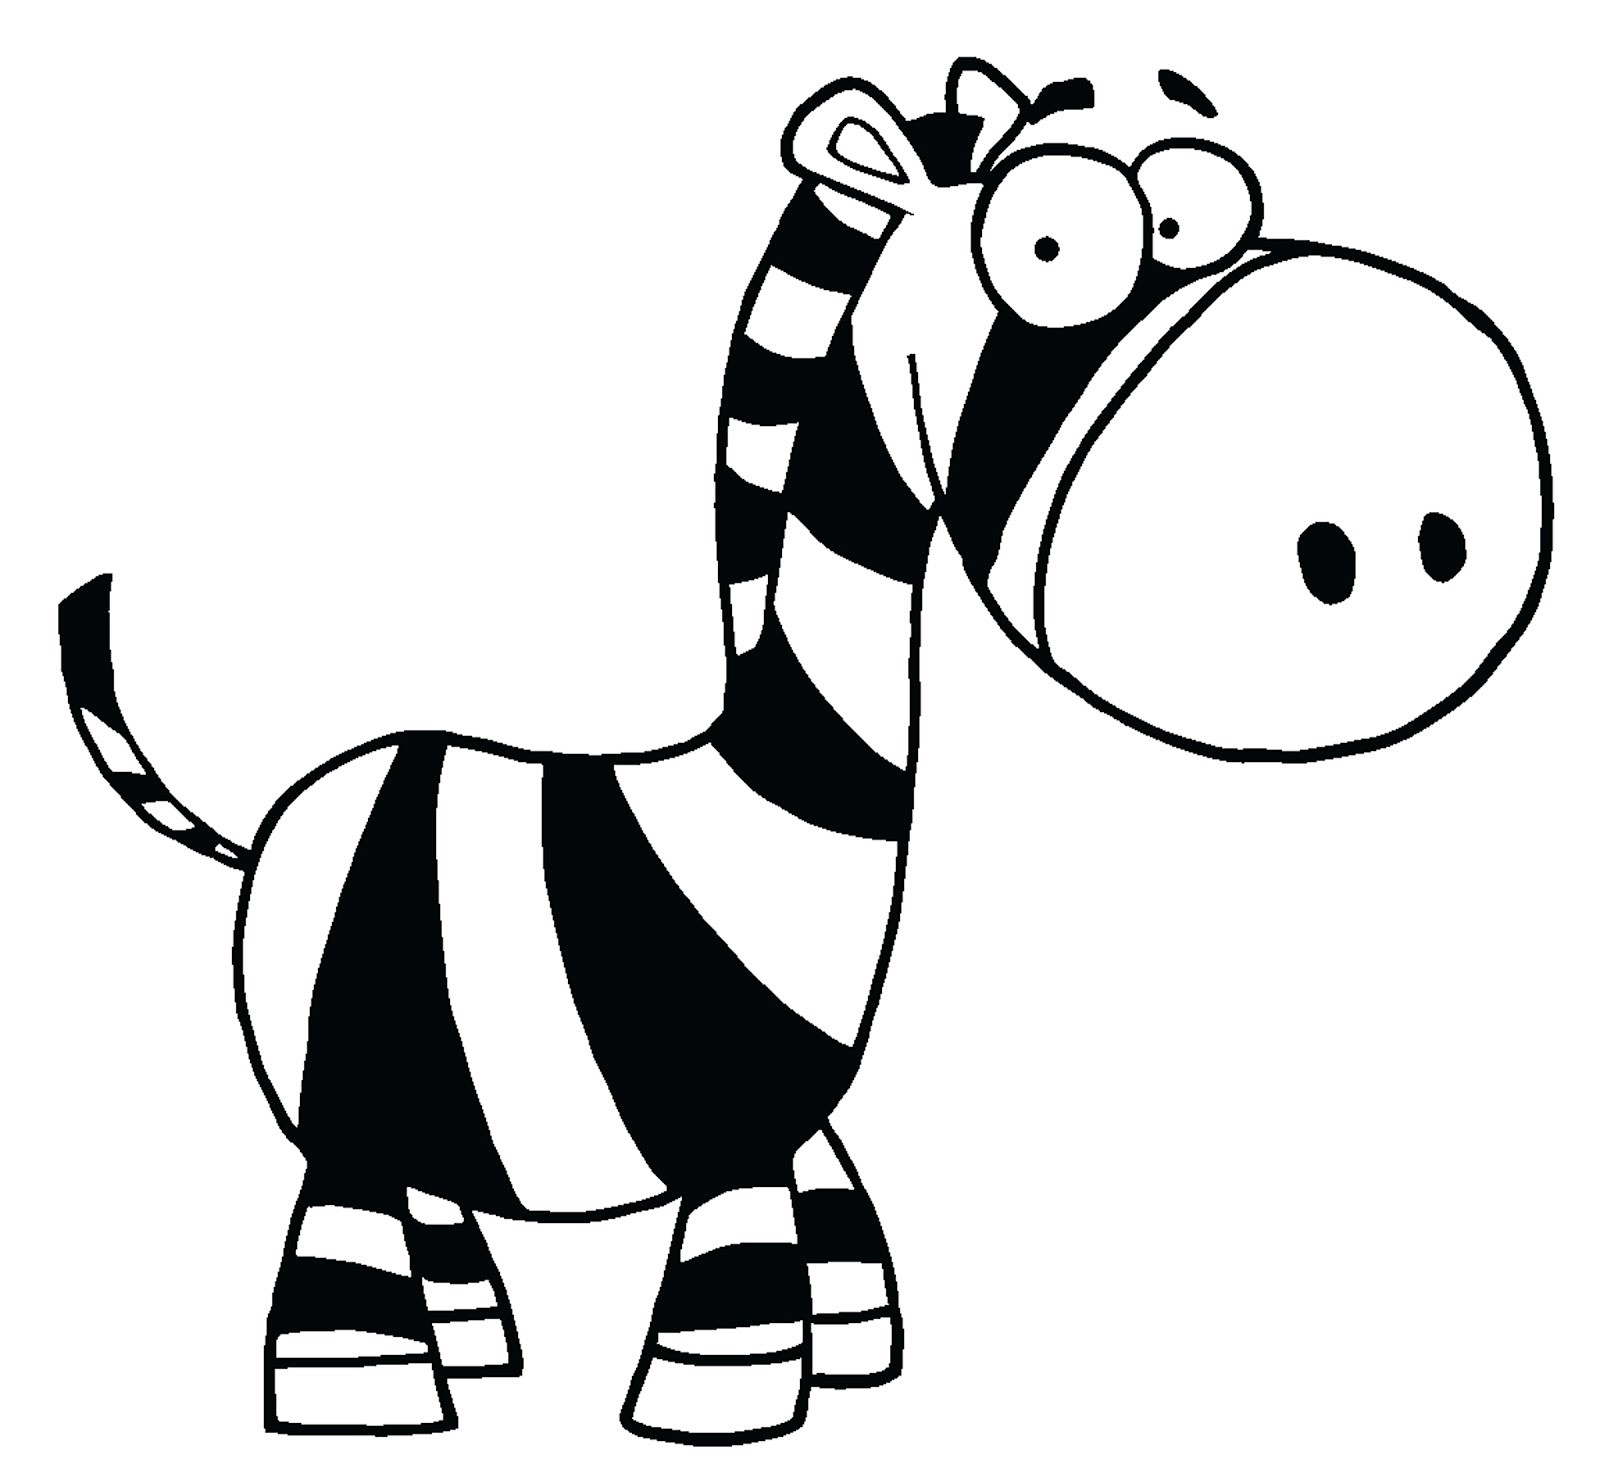 Baby zebra zebra cartoon pictures clip art image #12489